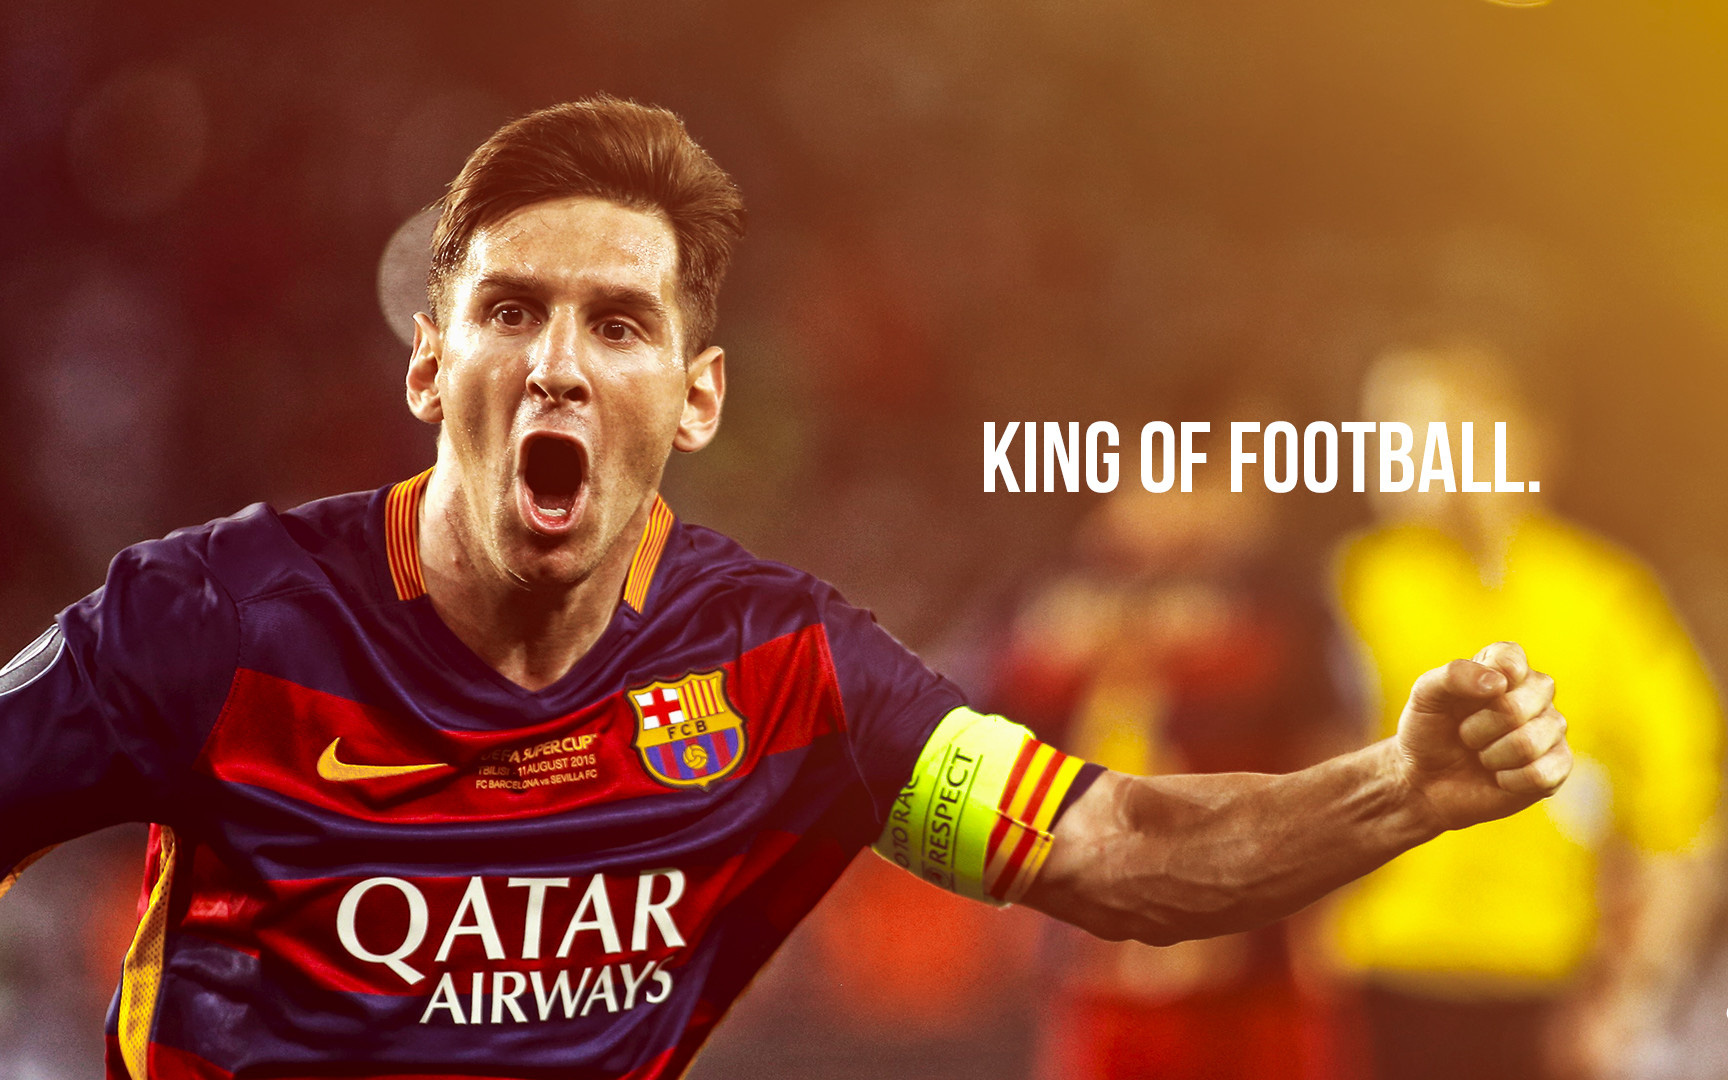 Ông vua của những kỷ lục: Lionel Messi là một trong những cầu thủ xuất sắc nhất mọi thời đại, với nhiều kỷ lục bất khả chiến bại trong lịch sử bóng đá. Hãy xem qua những thành tích ấn tượng của anh ta và cảm nhận sự vĩ đại của \